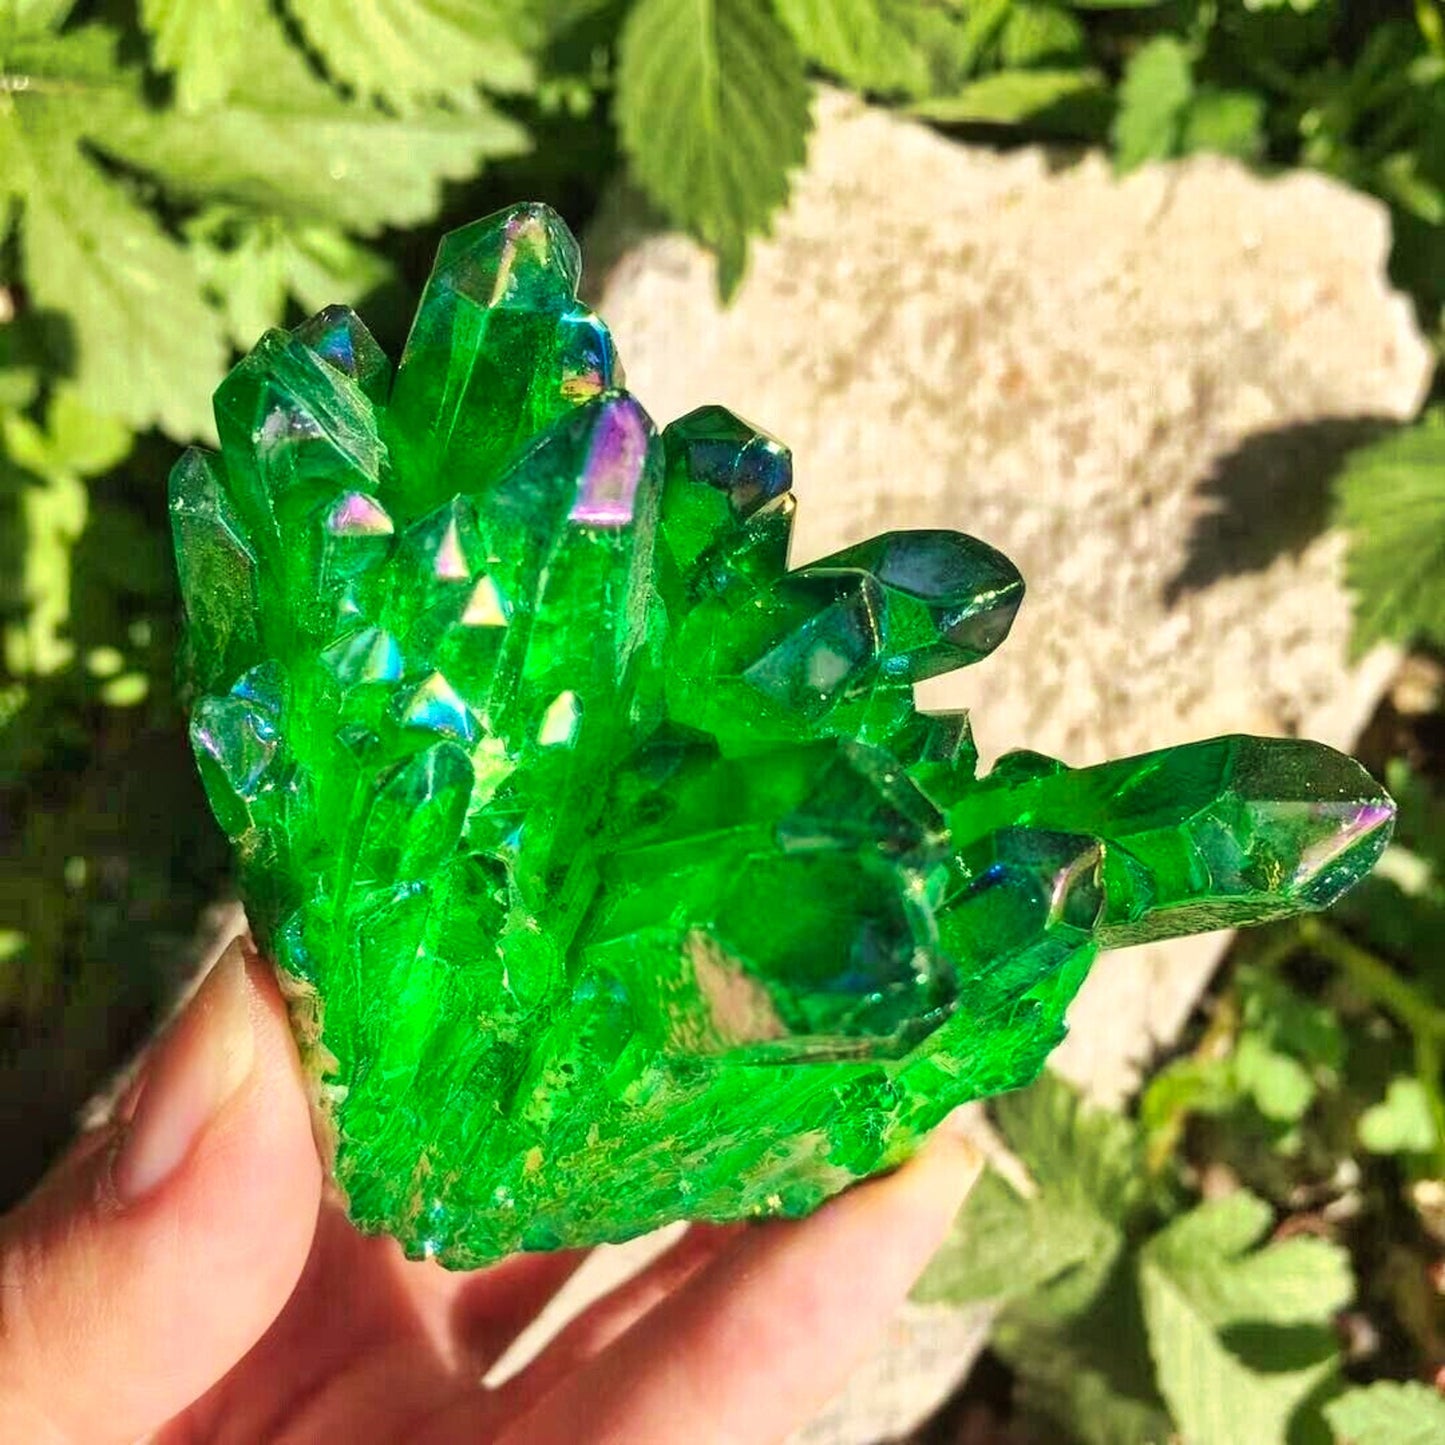 Green Flame Elecoplated Quartz Crystal Cluster - Rare Specimen for Wedding Decoration and Aquarium